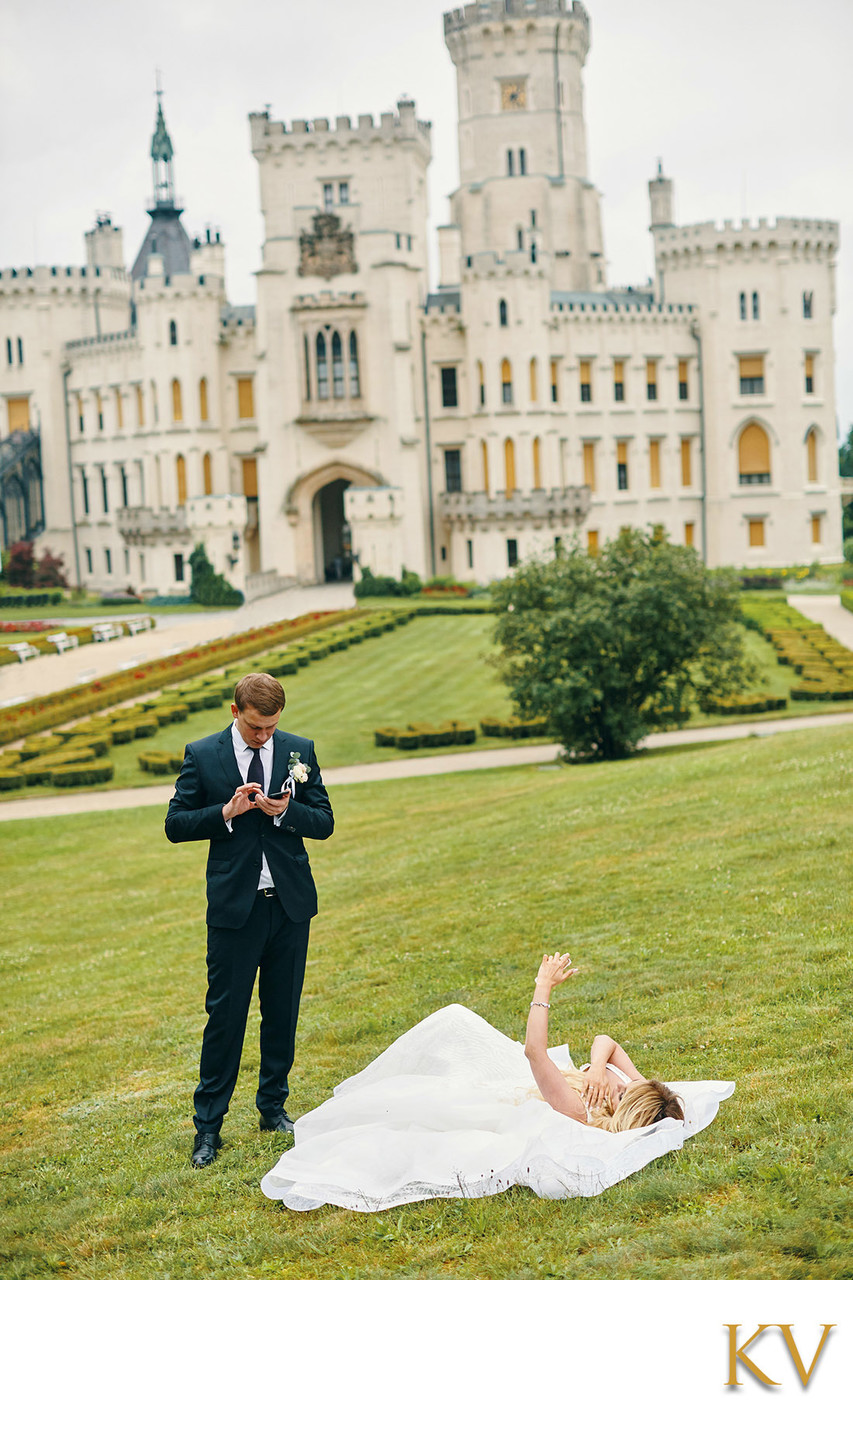 Hluboka nad Vltavou Castle wedding bride in grass